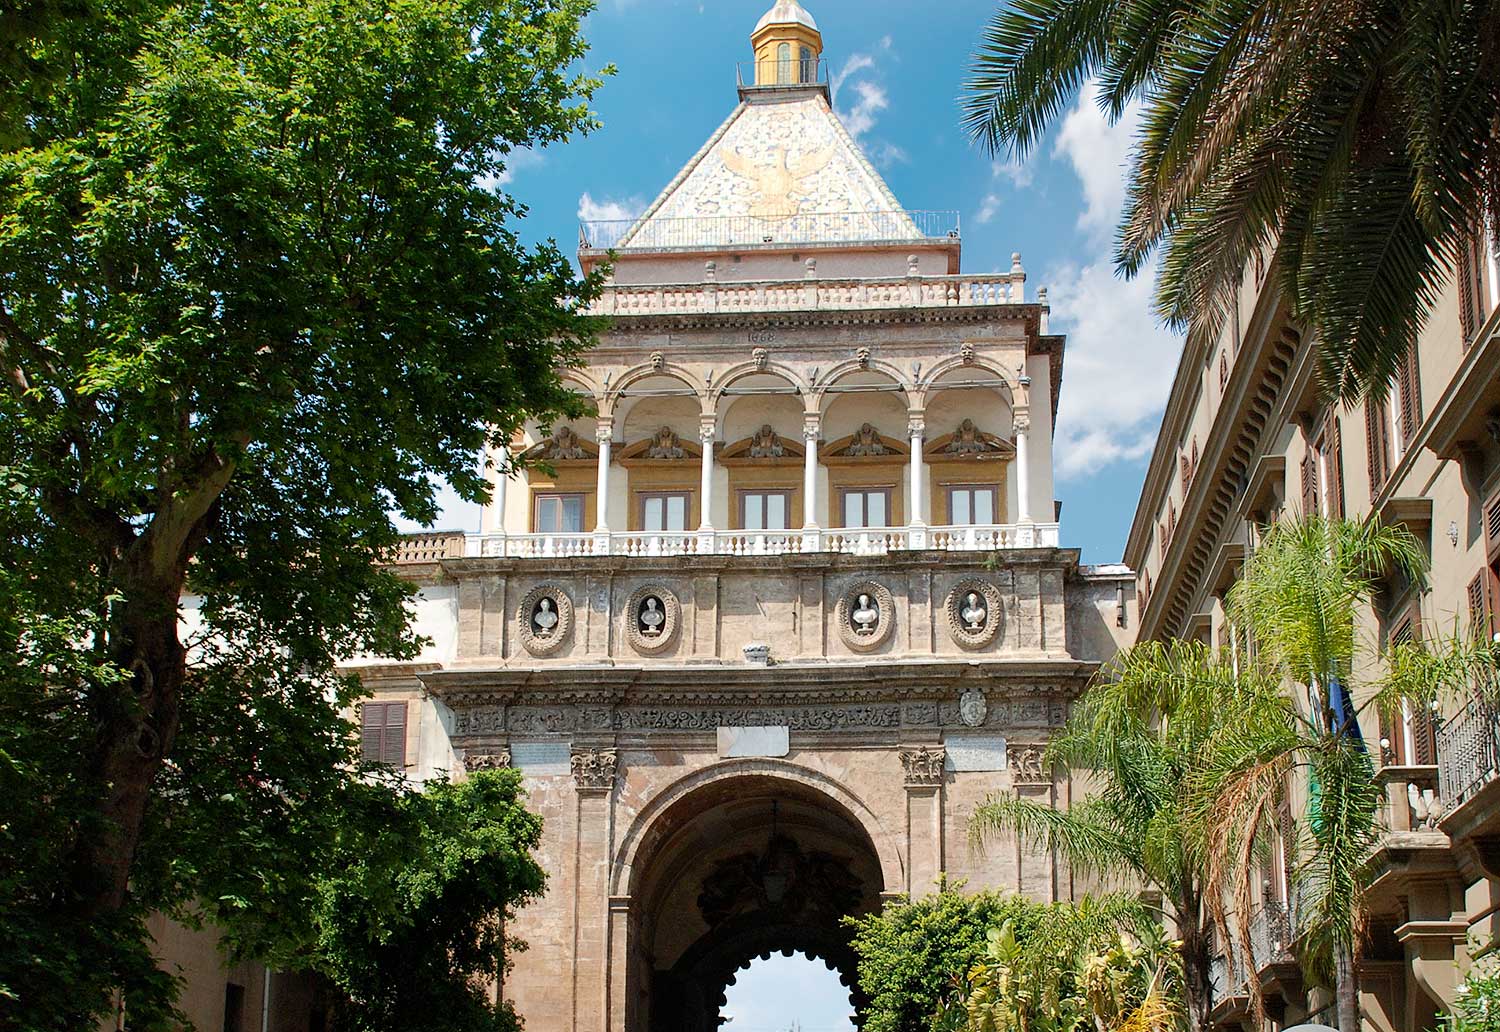 The Porta Nuova in Palermo